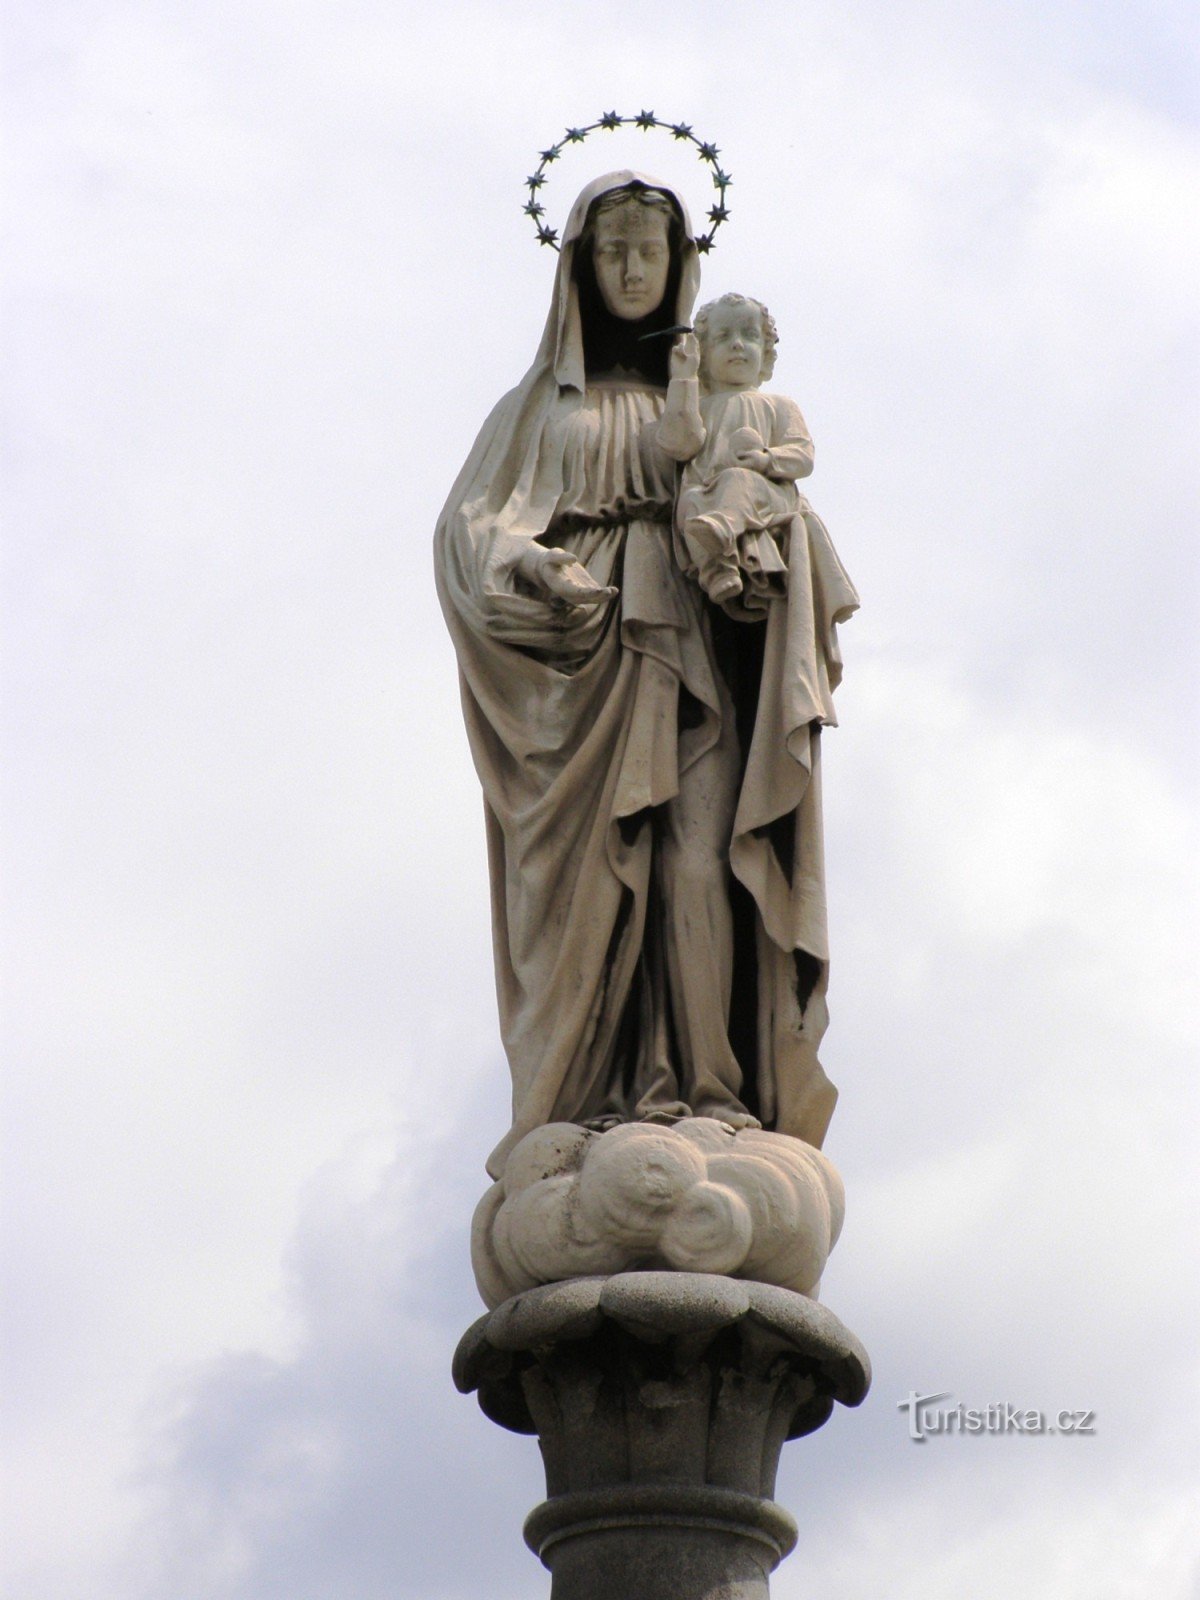 Žulová - eine Granitsäule mit einer Statue der Muttergottes